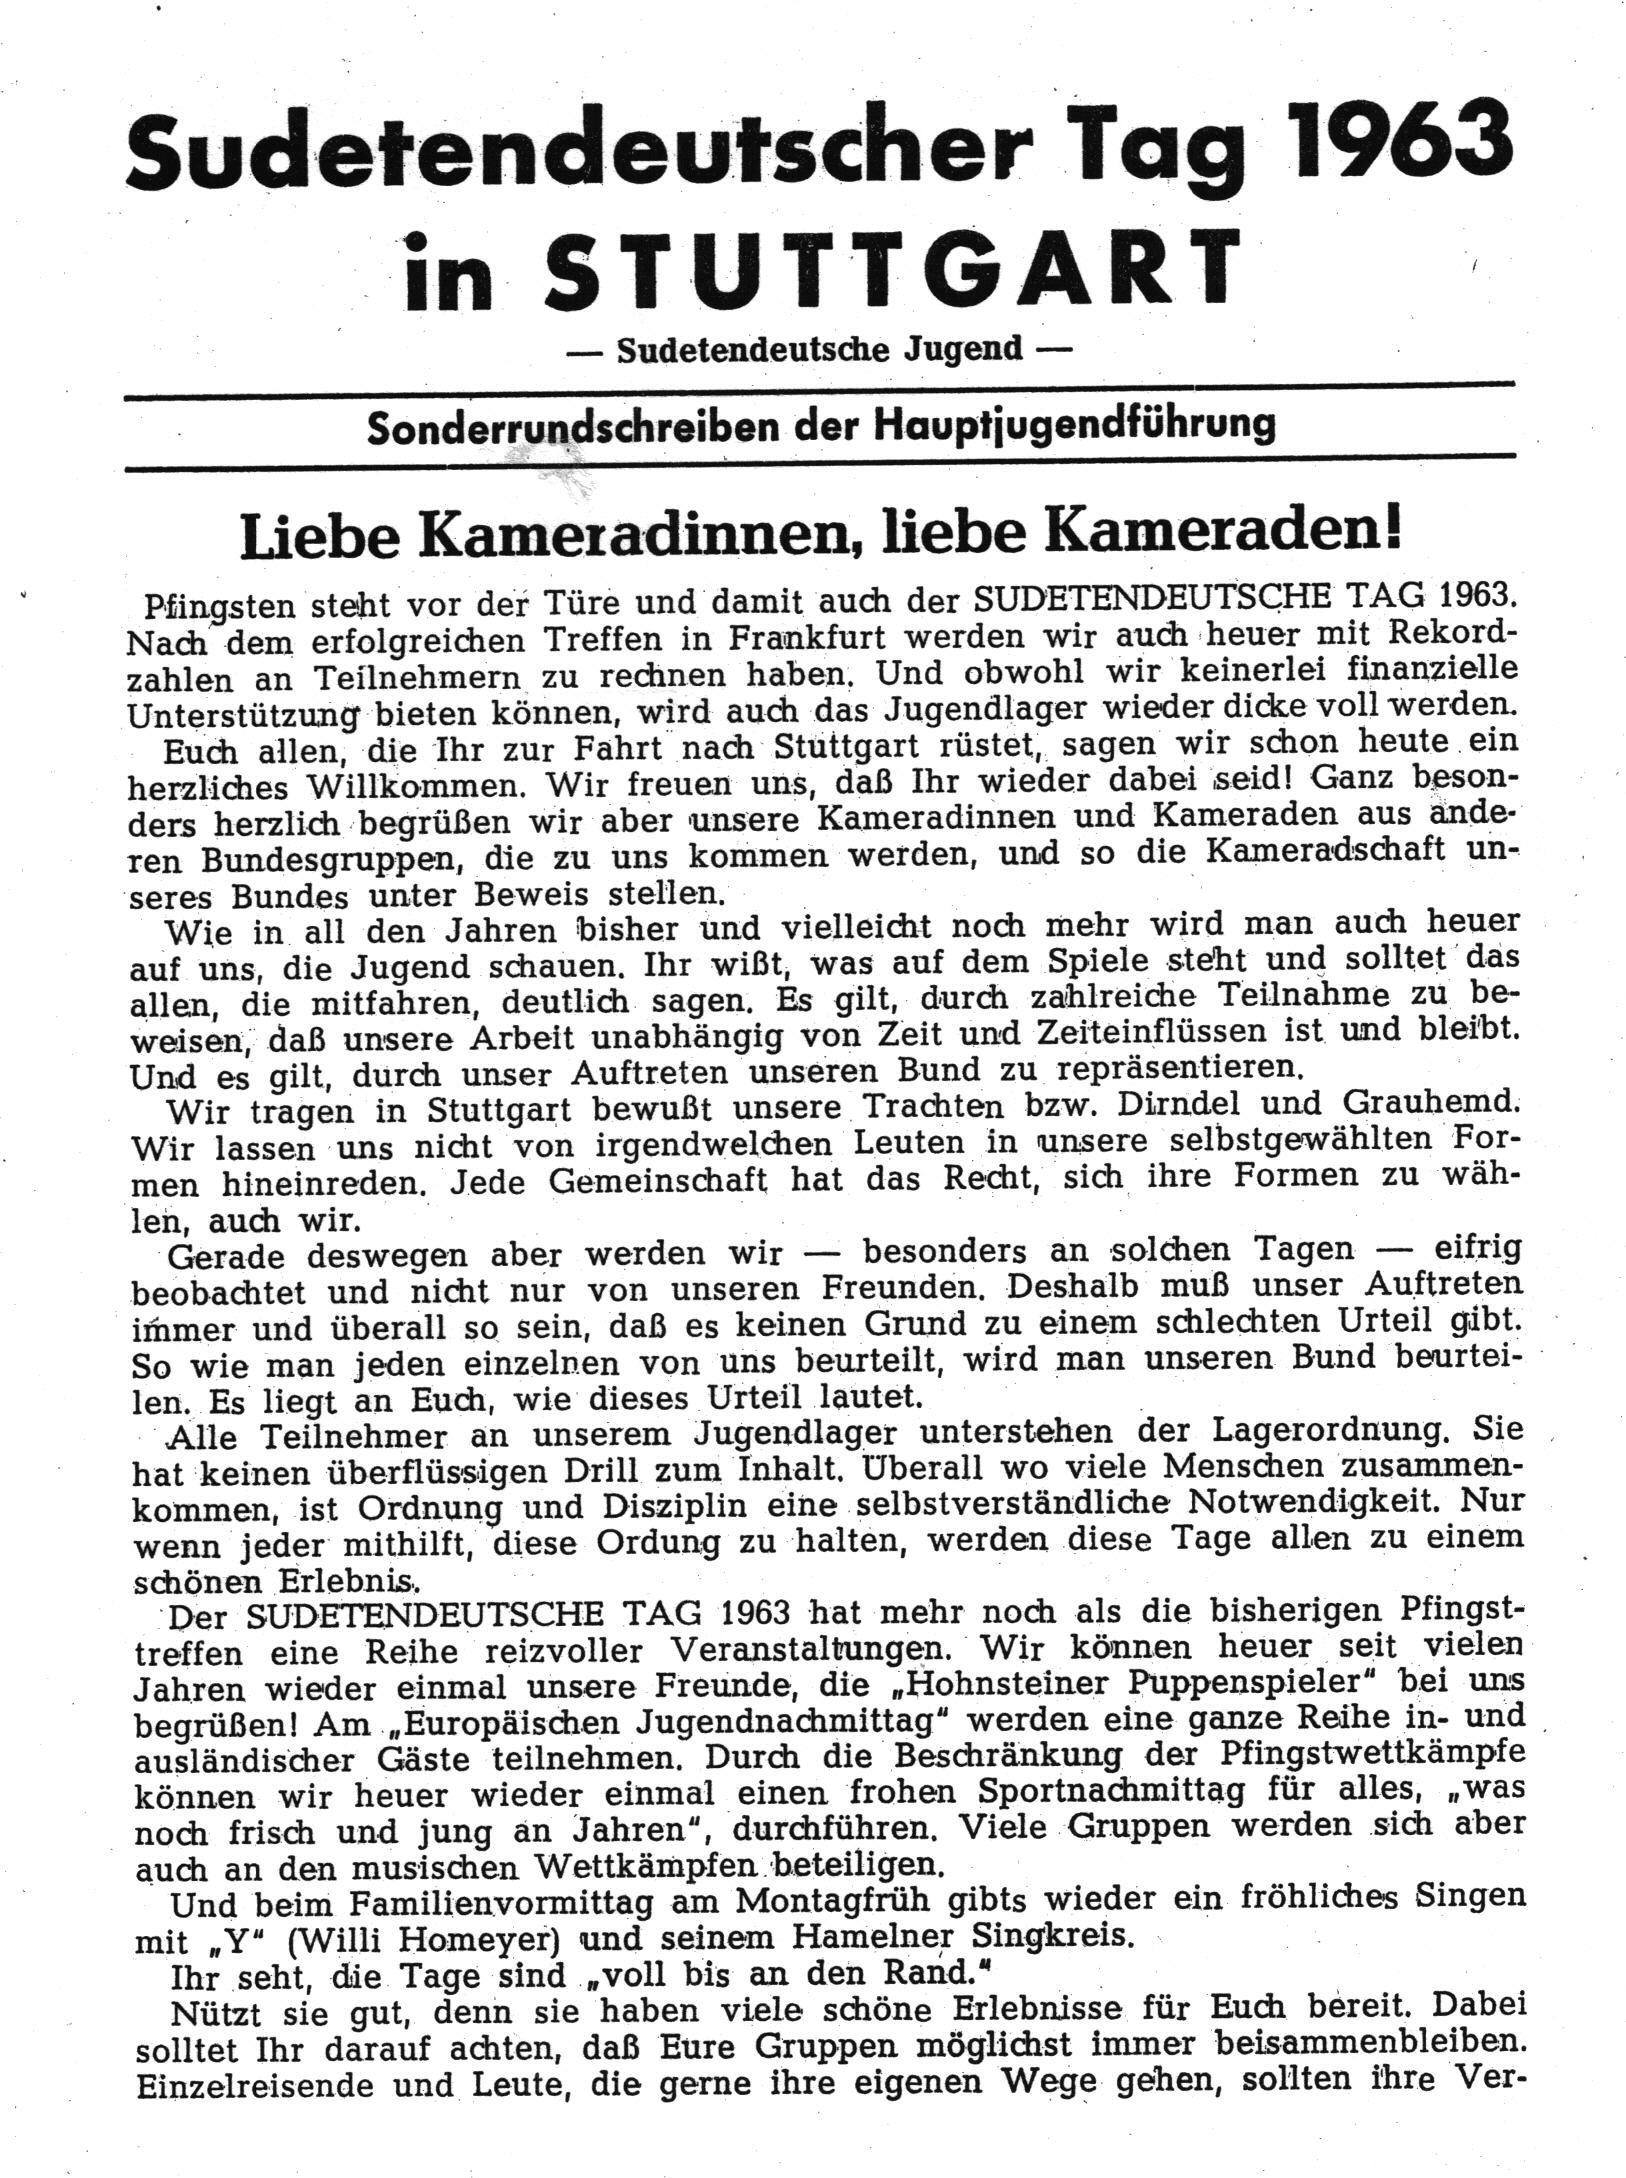 Sonderrundschreiben zum Sudetendeutschen Tag 1963